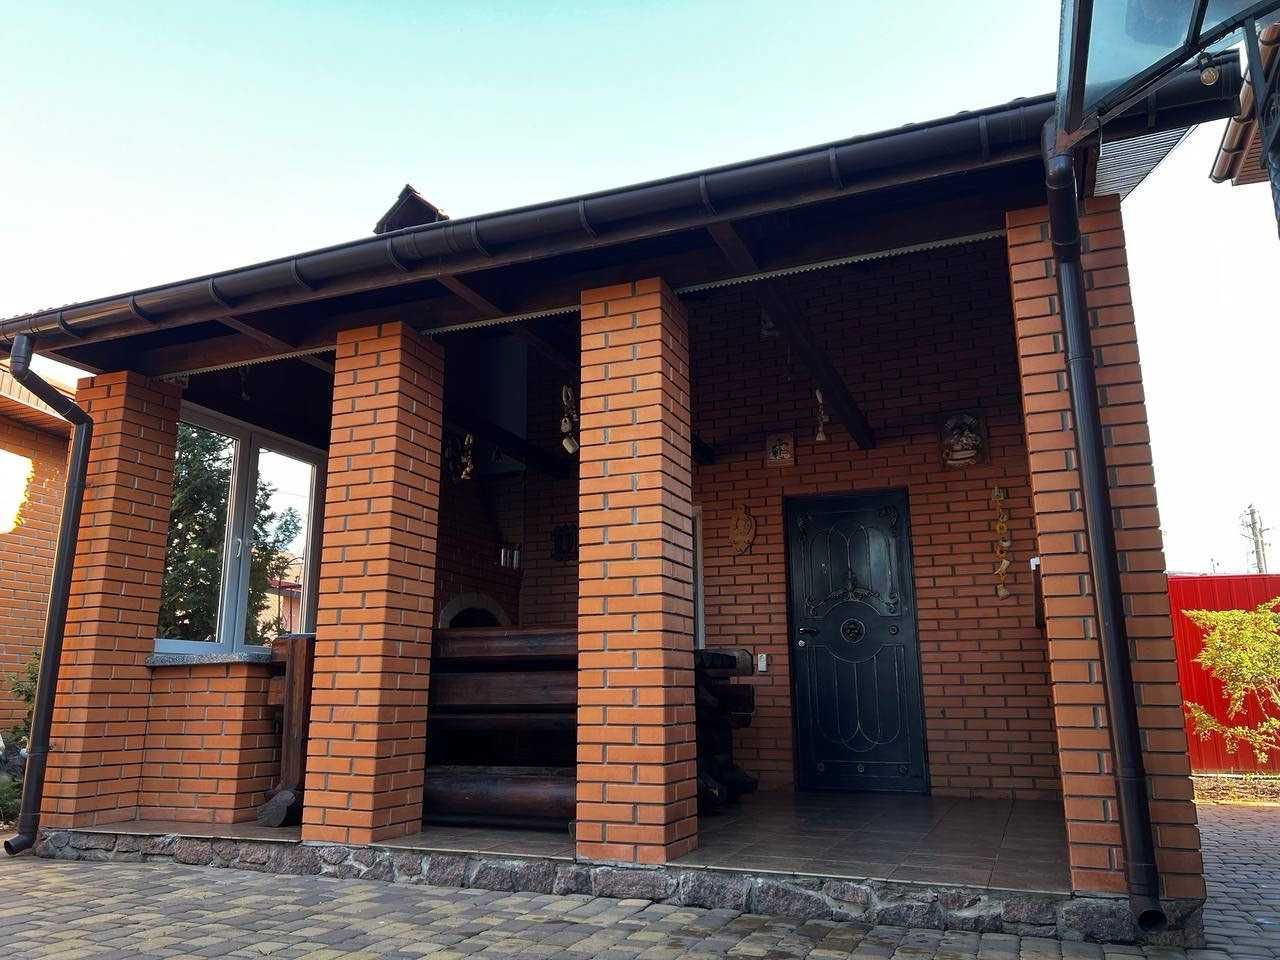 Продам будинок в передмісті Києва, повністю укомплектований!